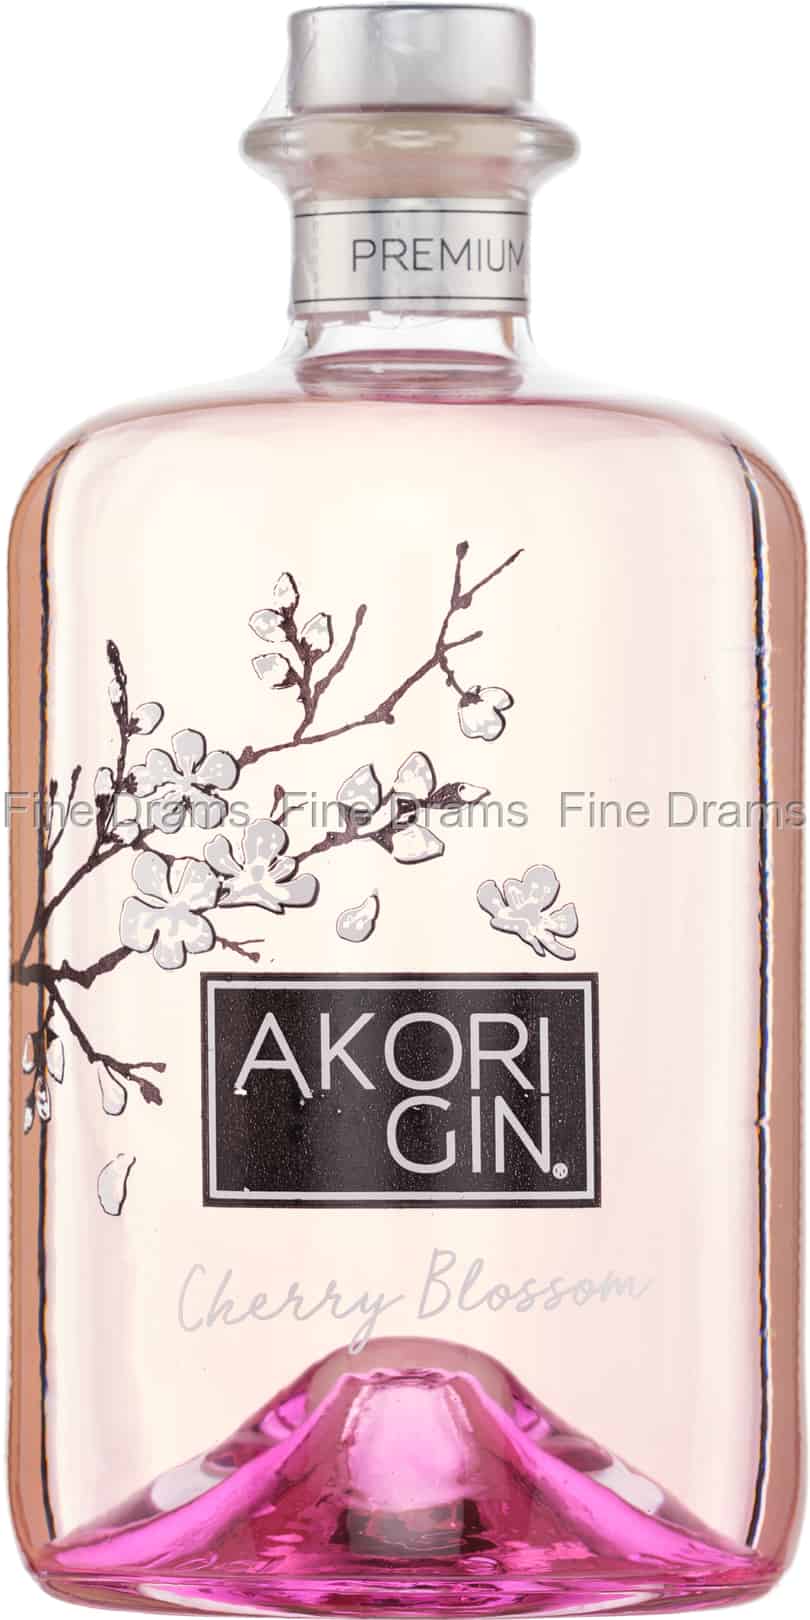 AKORI Cherry Blossom, Gin Premium